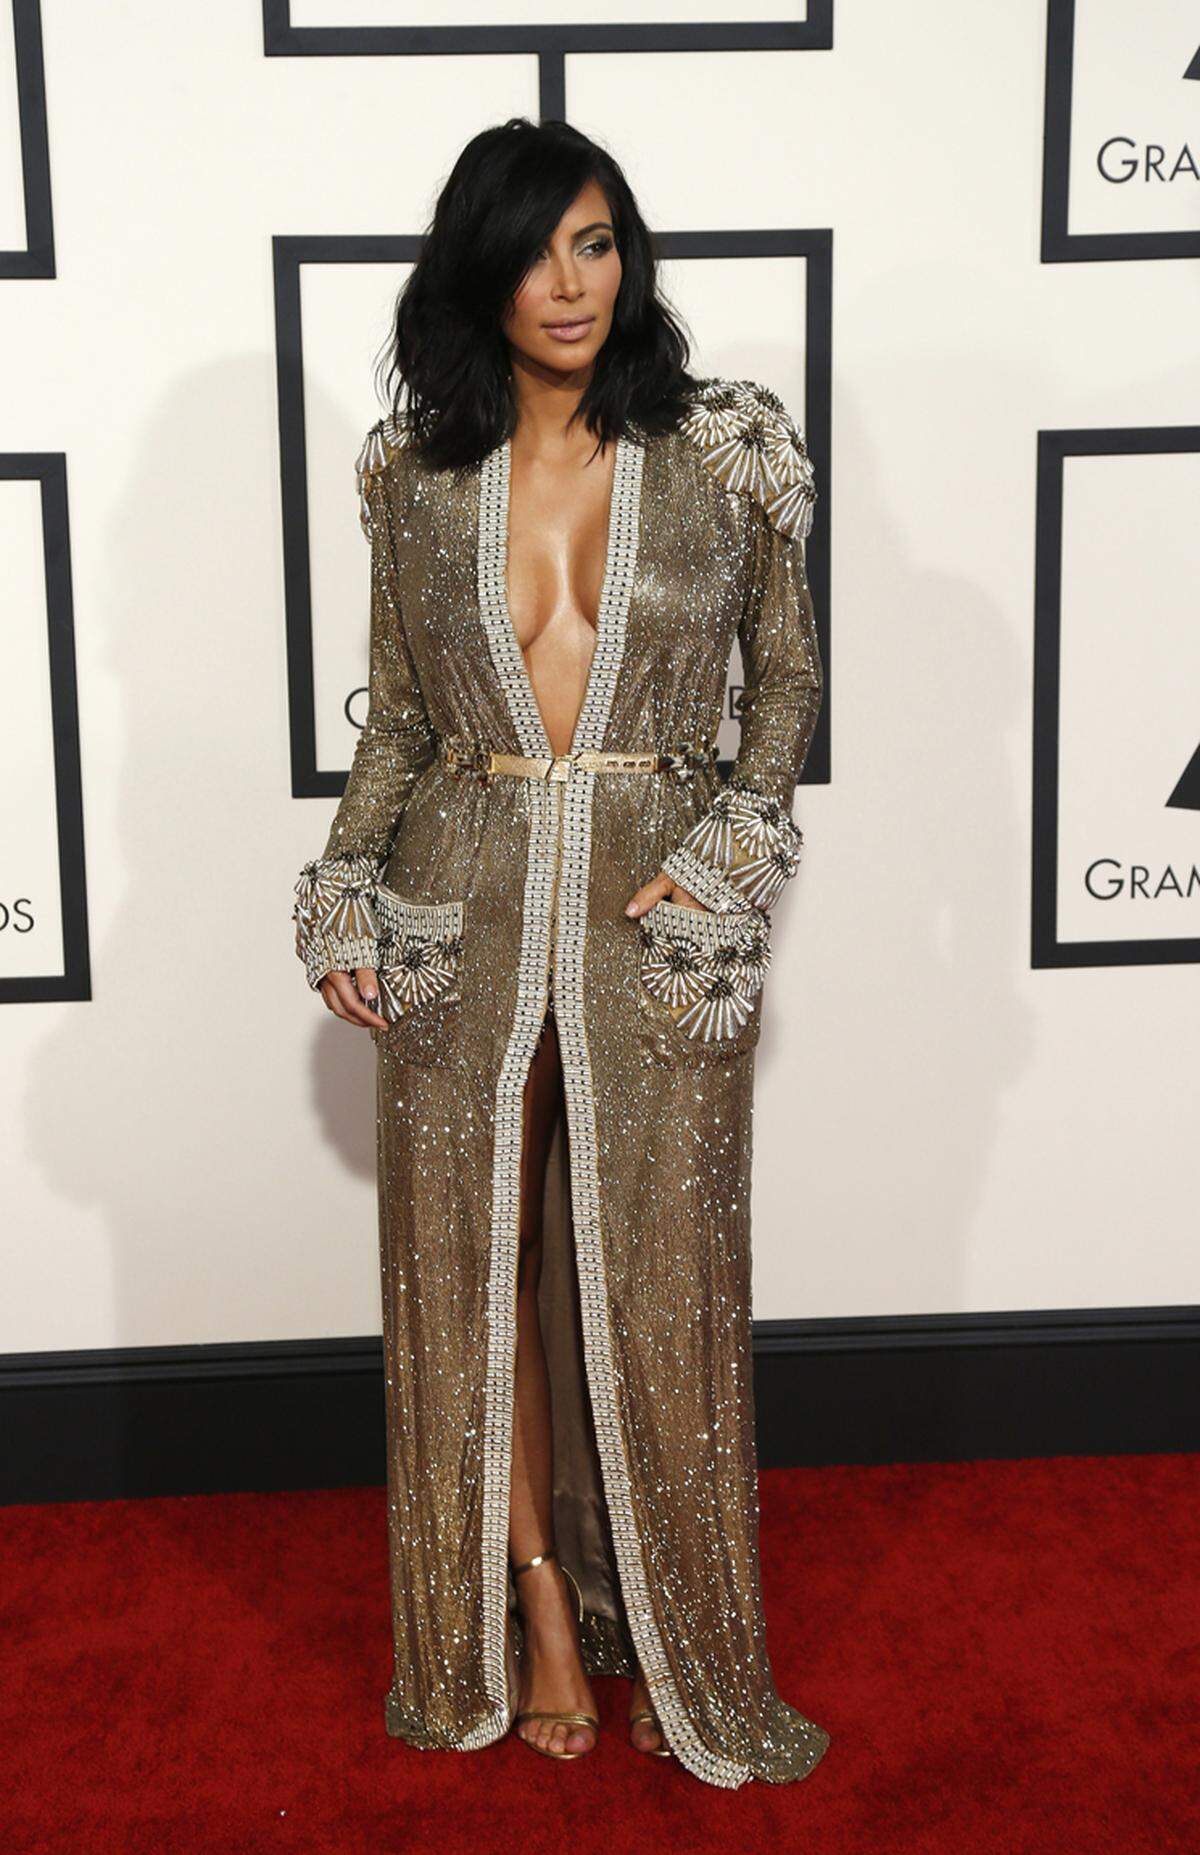 Kim Kardashian, Ehefrau von Kanye West, in einer goldenen Mantelrobe von Jean Paul Gaultier.